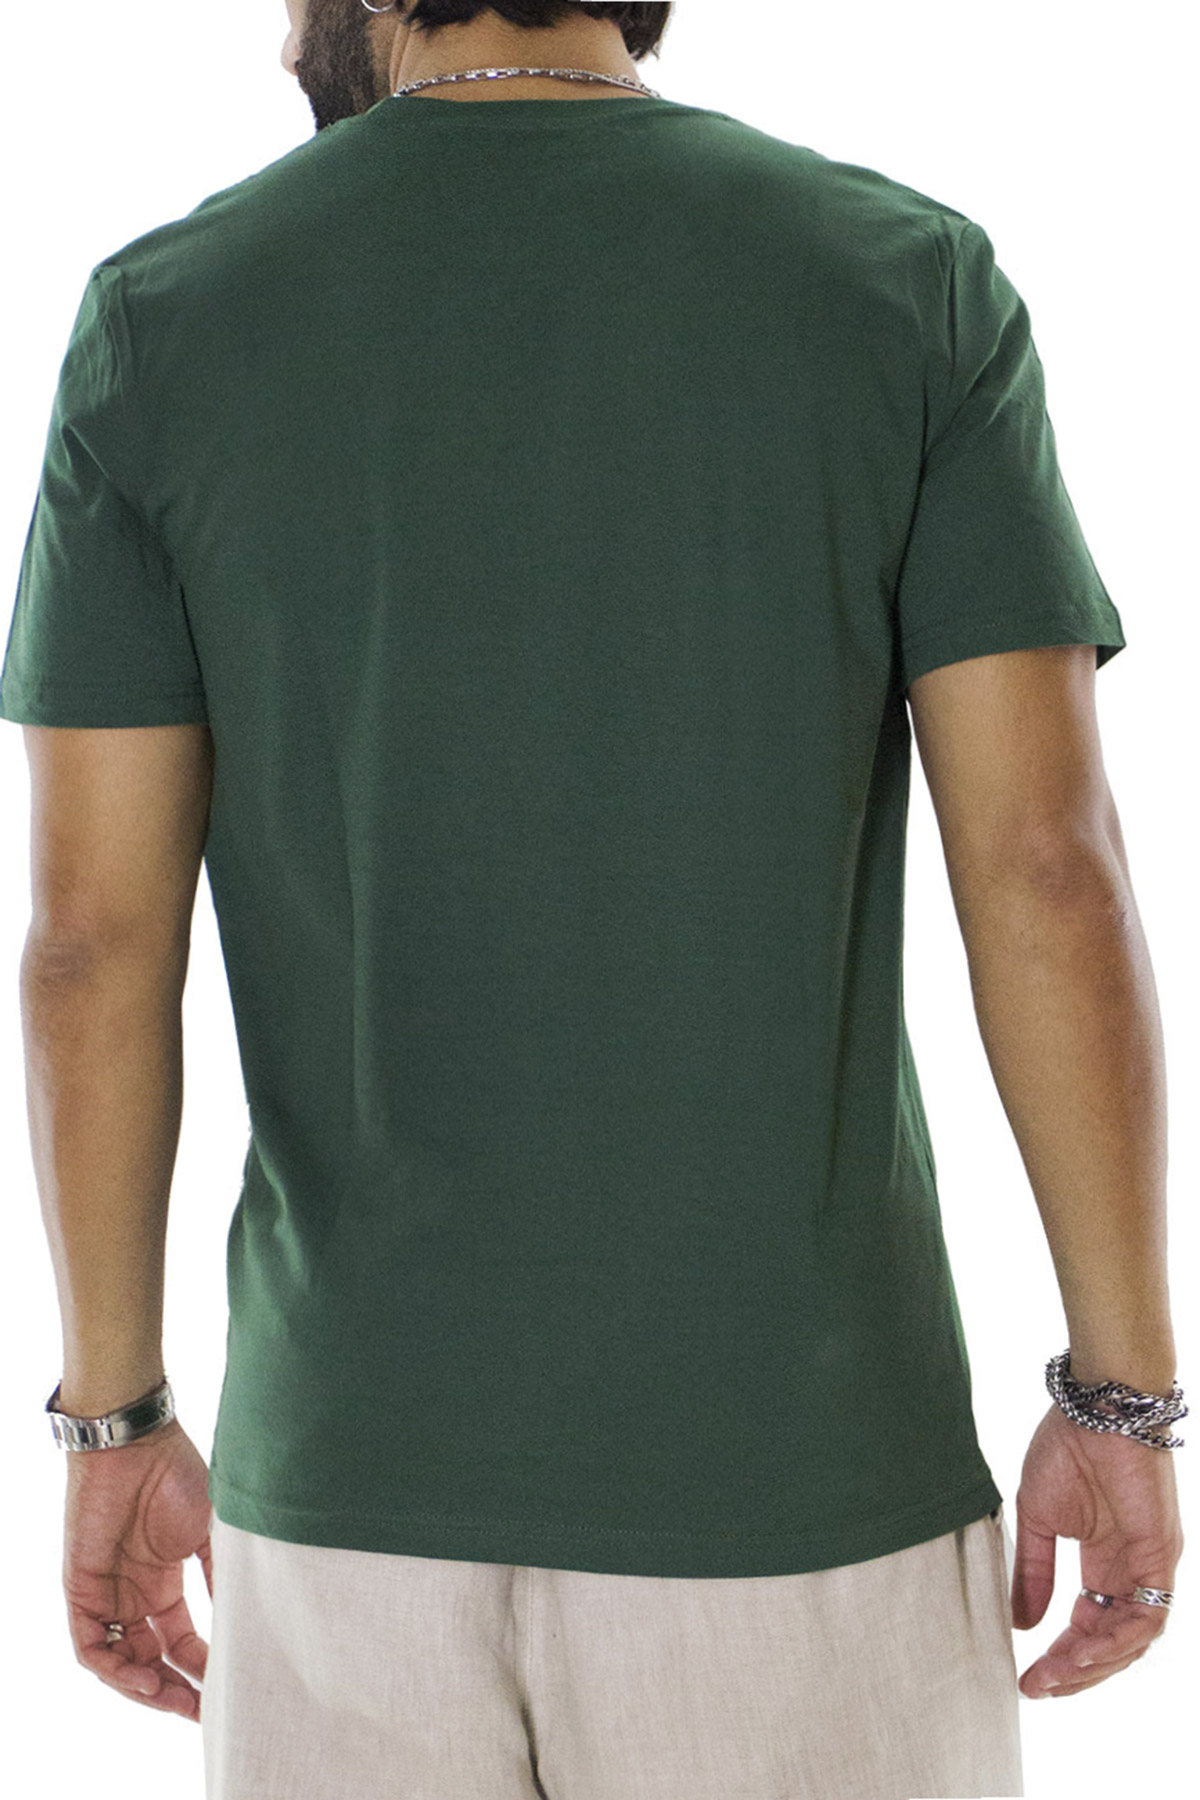 T-shirt da uomo Verde Foresta in cotone organico tinta unita regular fit elasticizzata girocollo